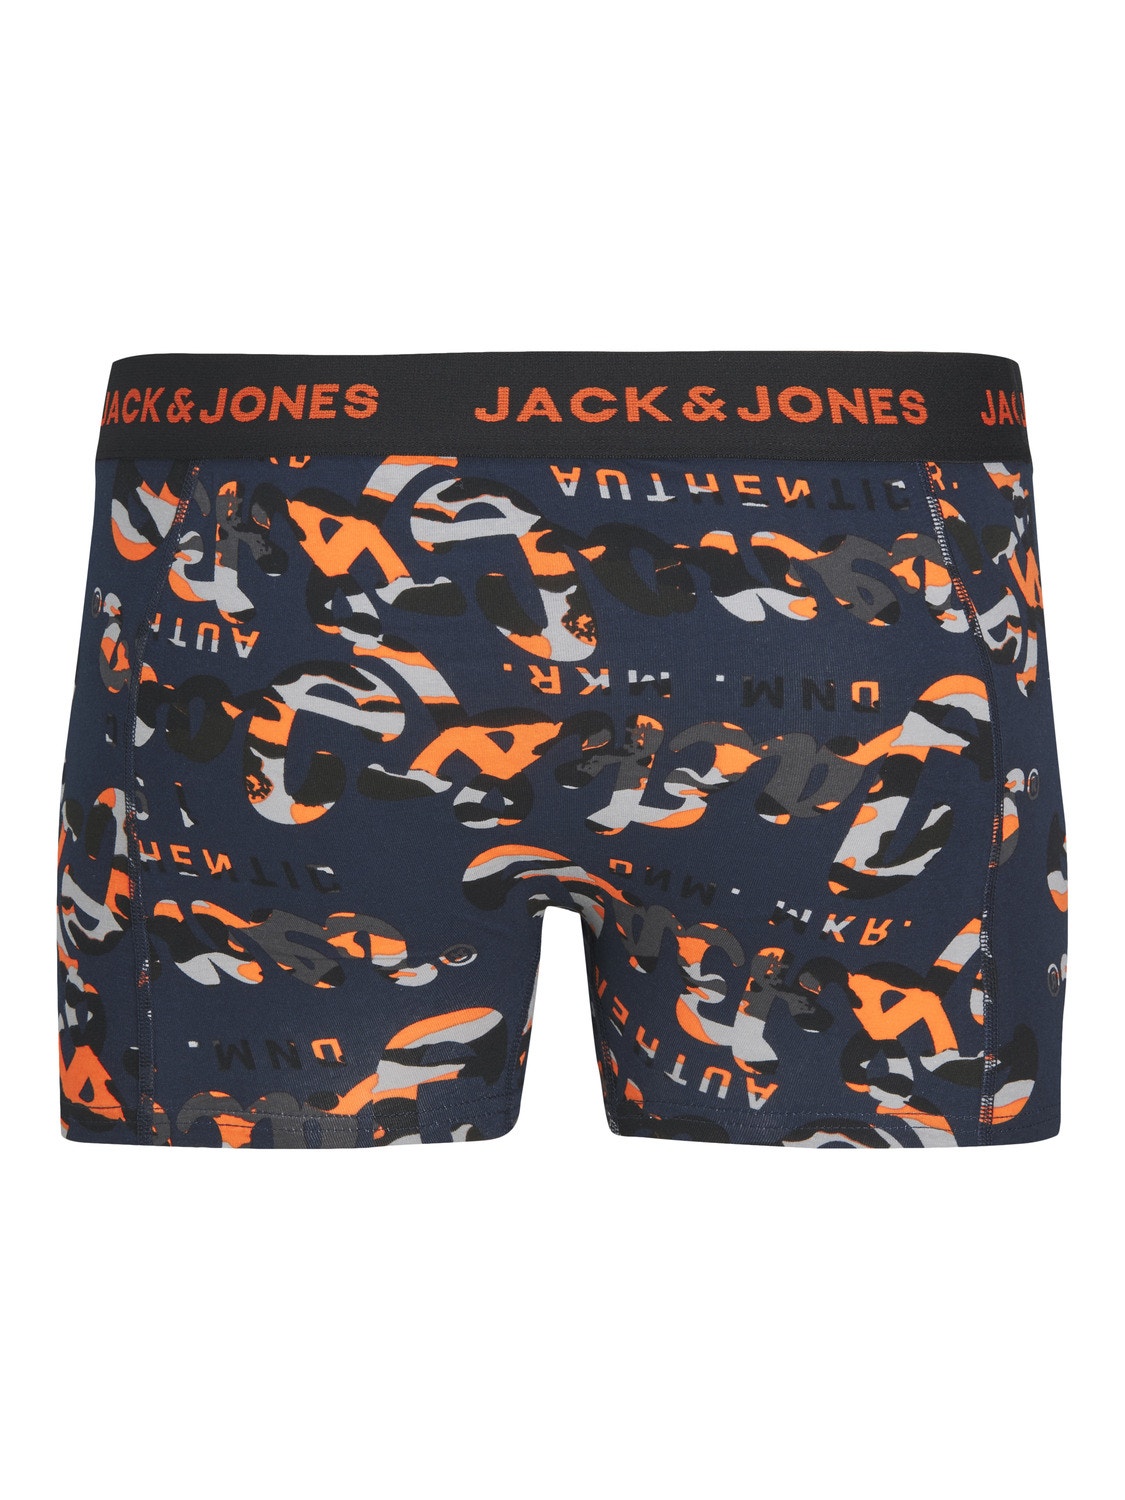 Jack & Jones 3-pack Trunks For boys -Navy Blazer - 12237699